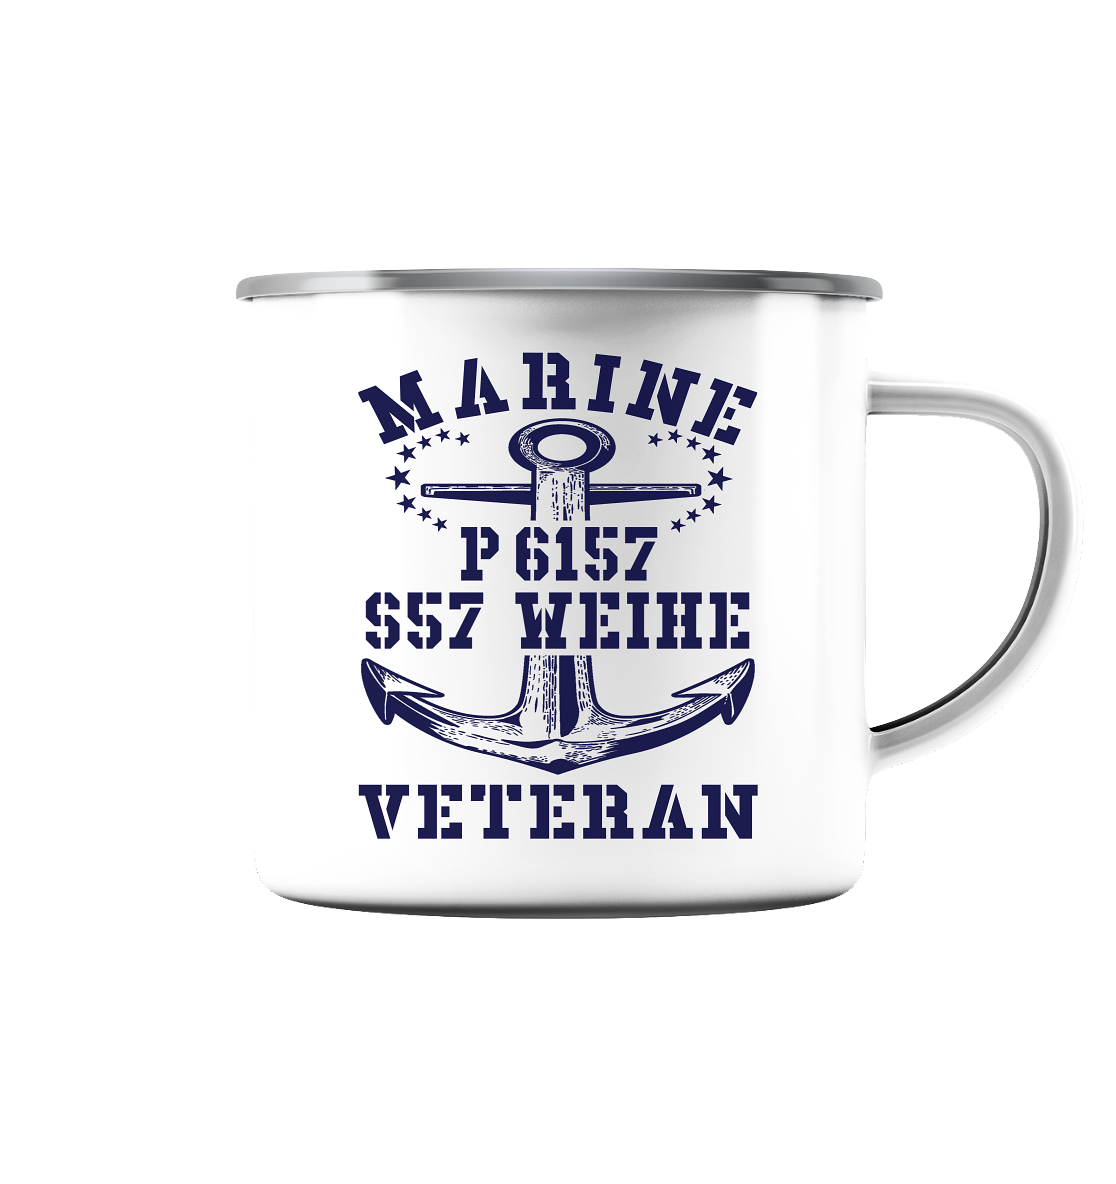 P6157 S57 WEIHE Marine Veteran - Emaille Tasse (Silber)